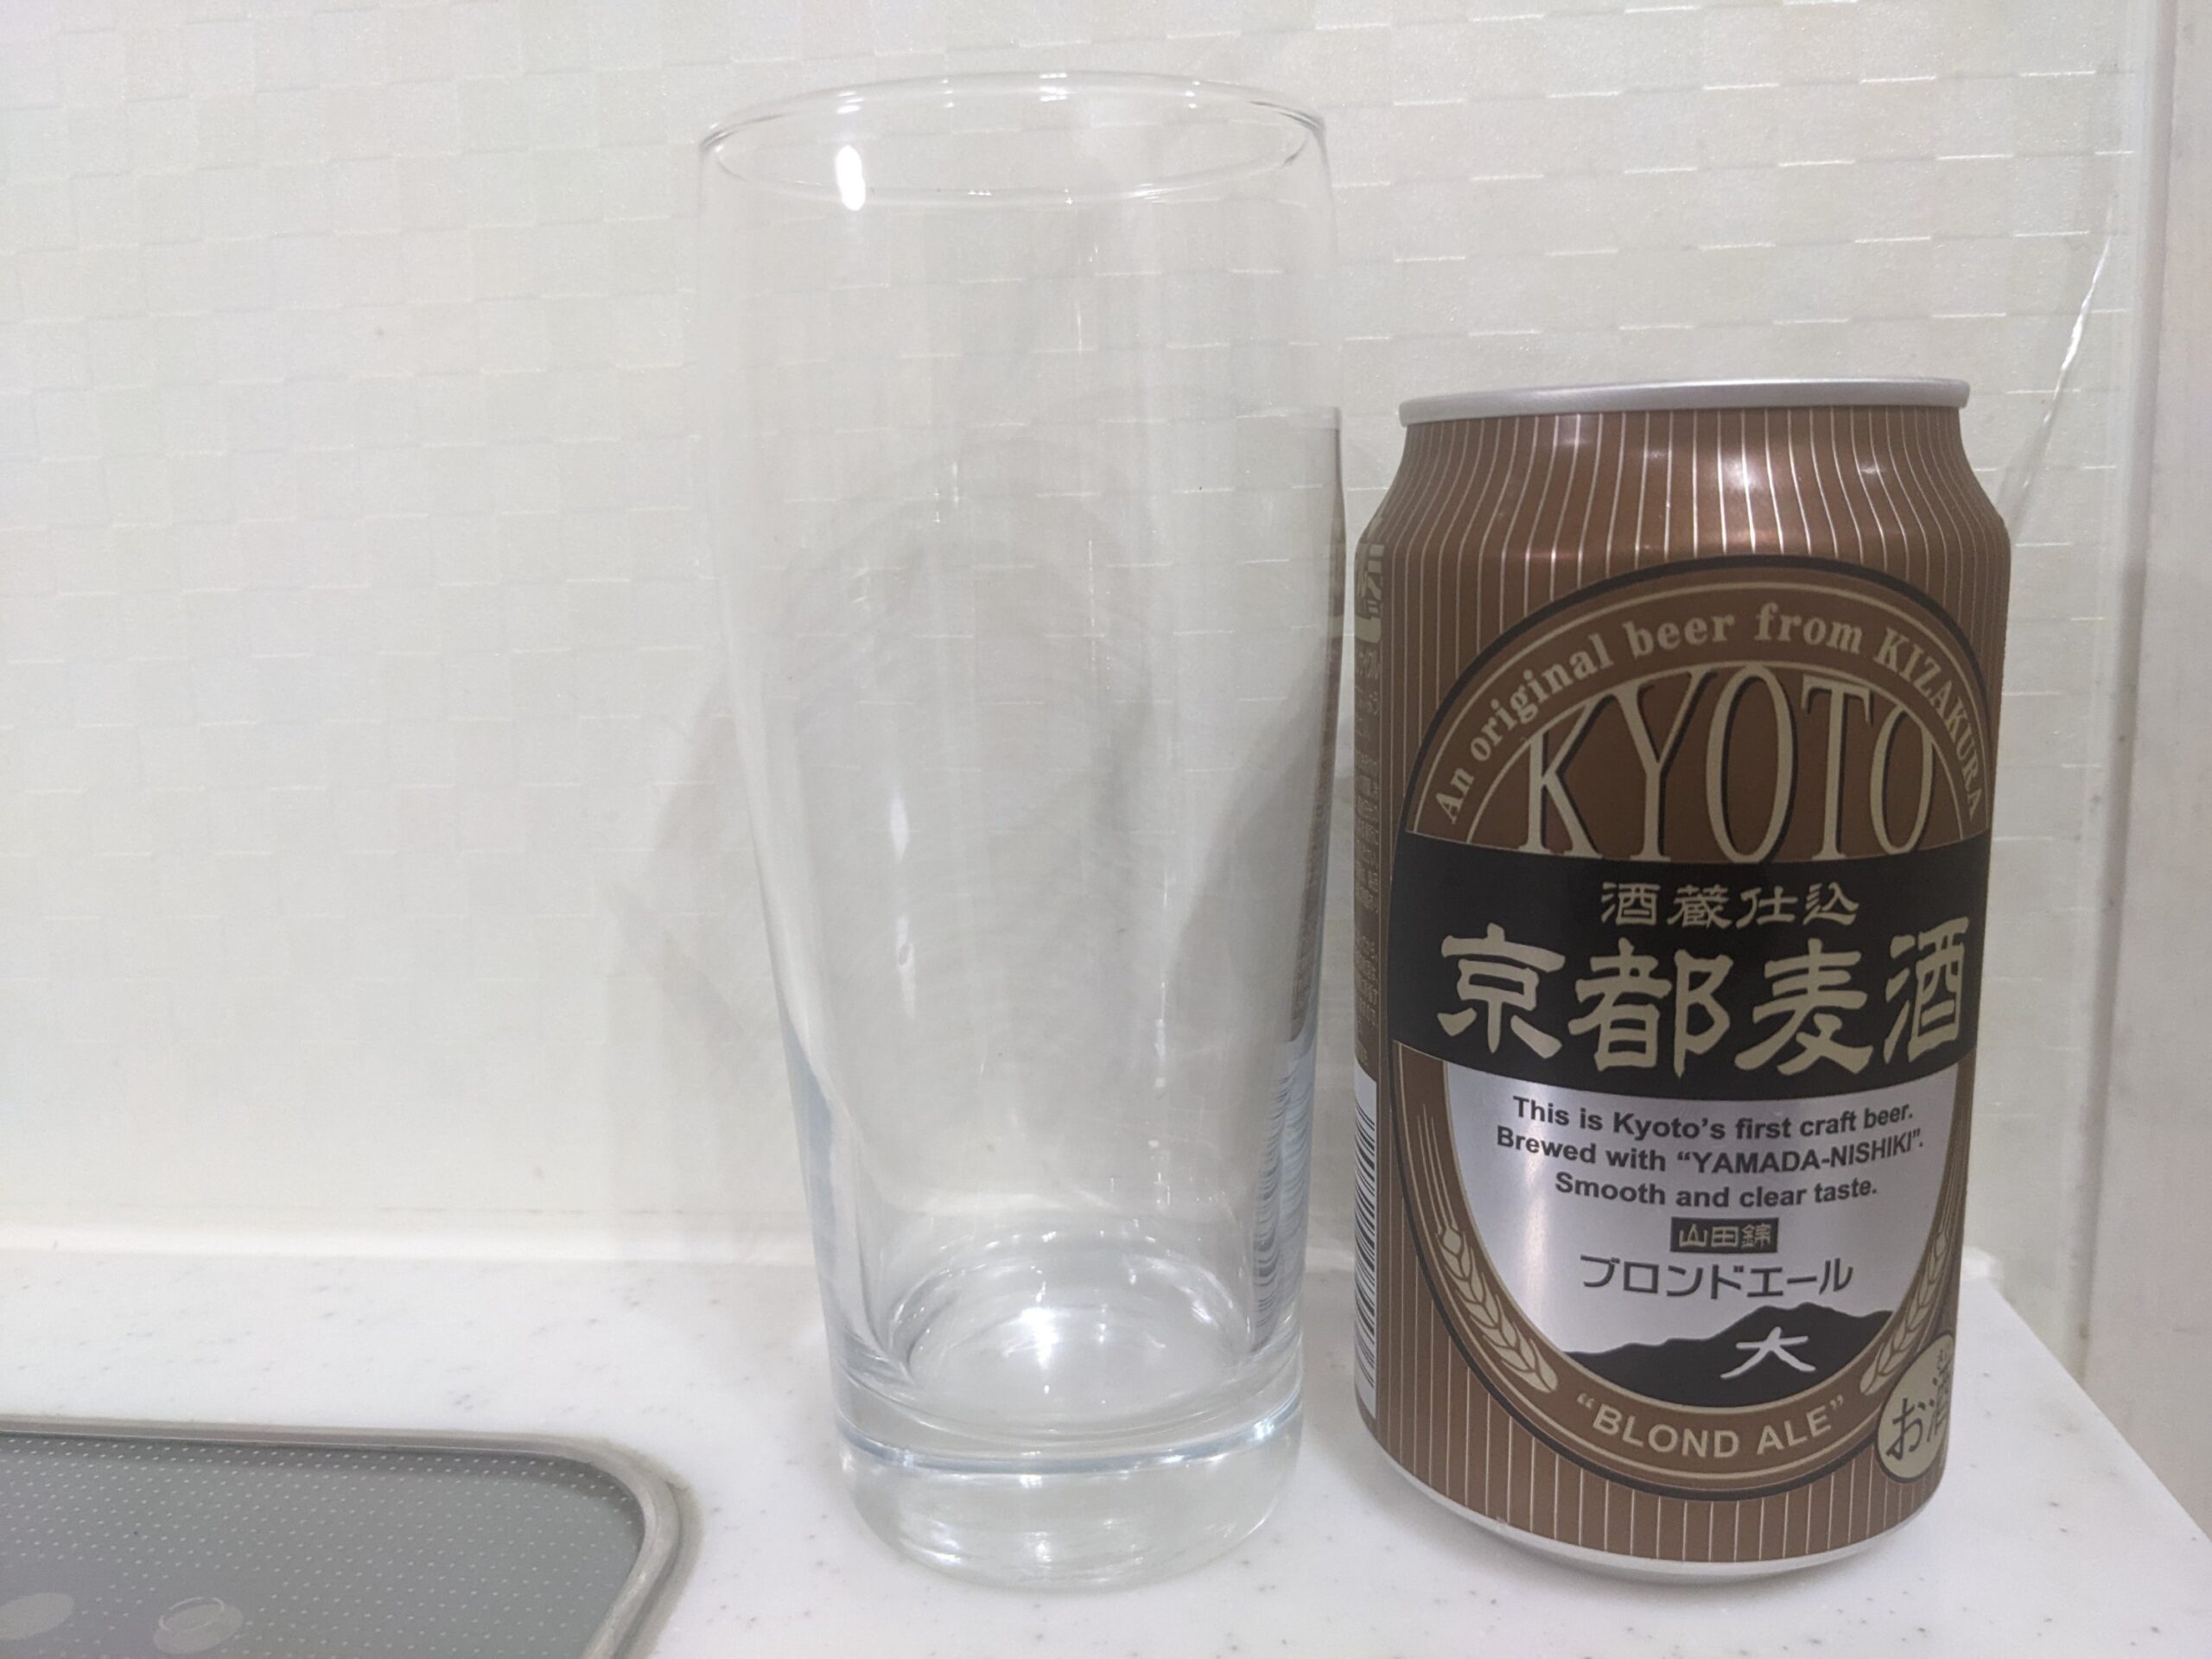 グラスと缶の「京都麦酒ブロンドエール」